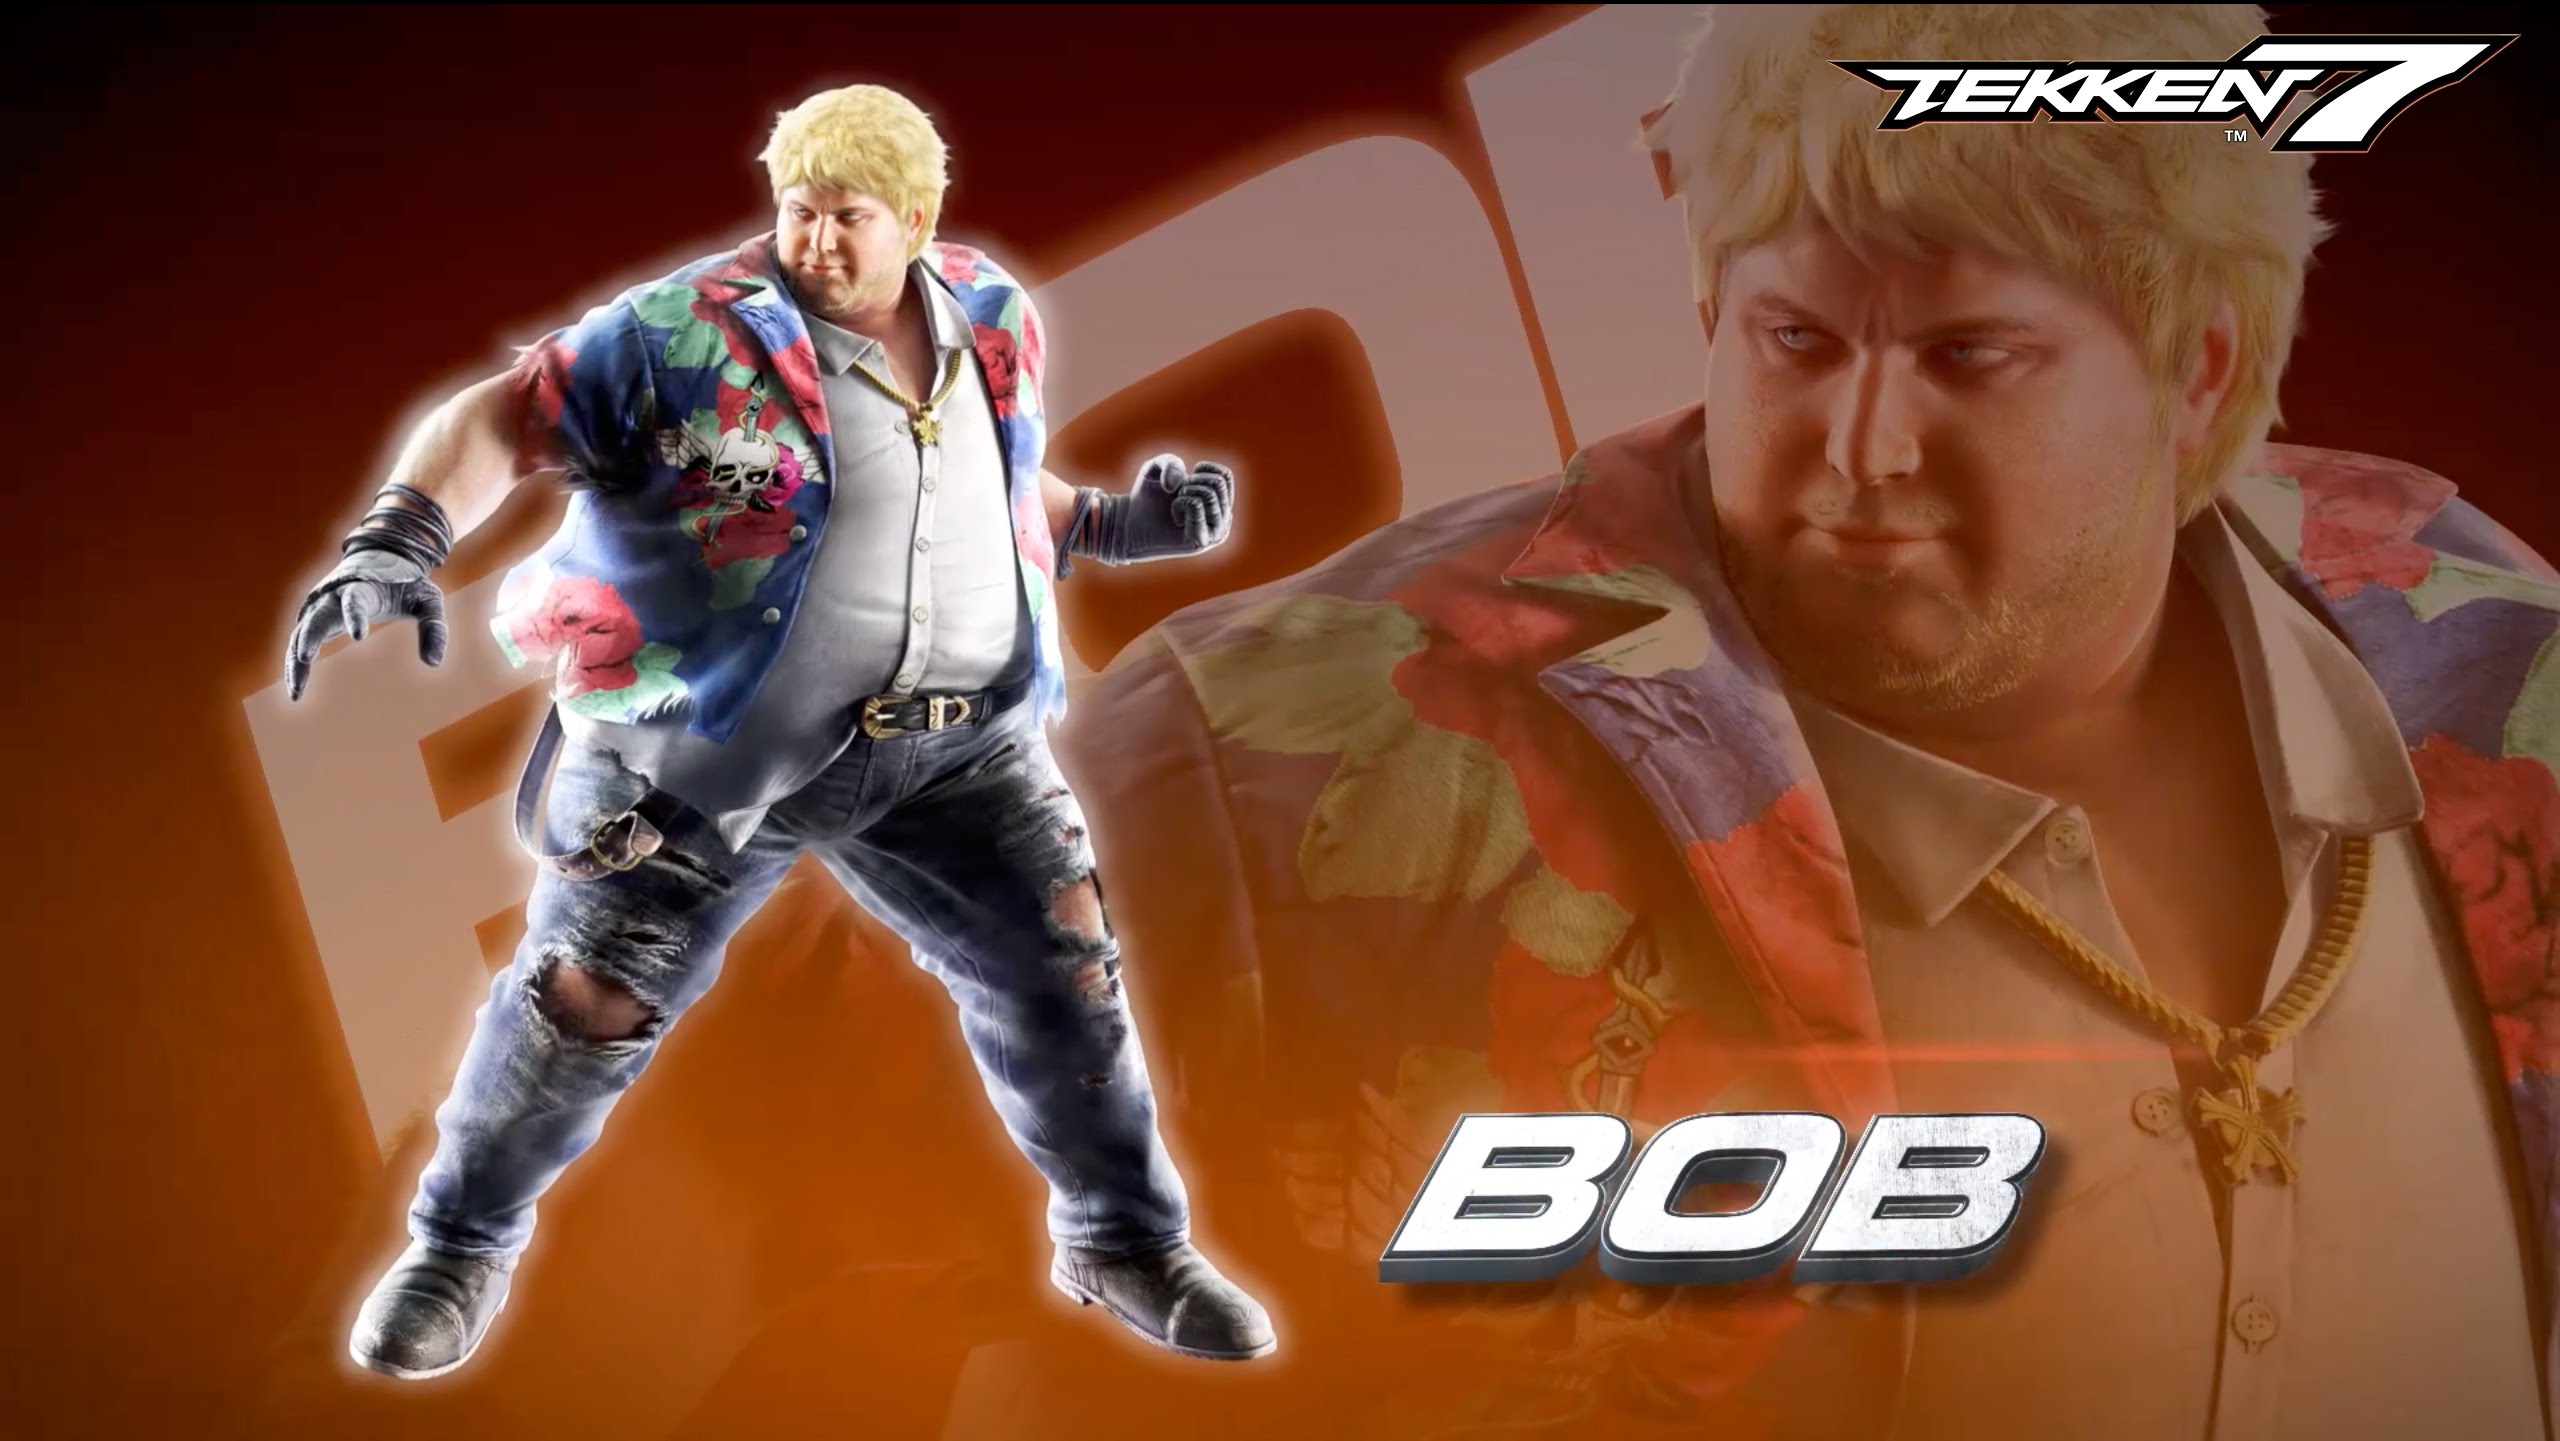 Tekken 7 – Bob Reveal Trailer